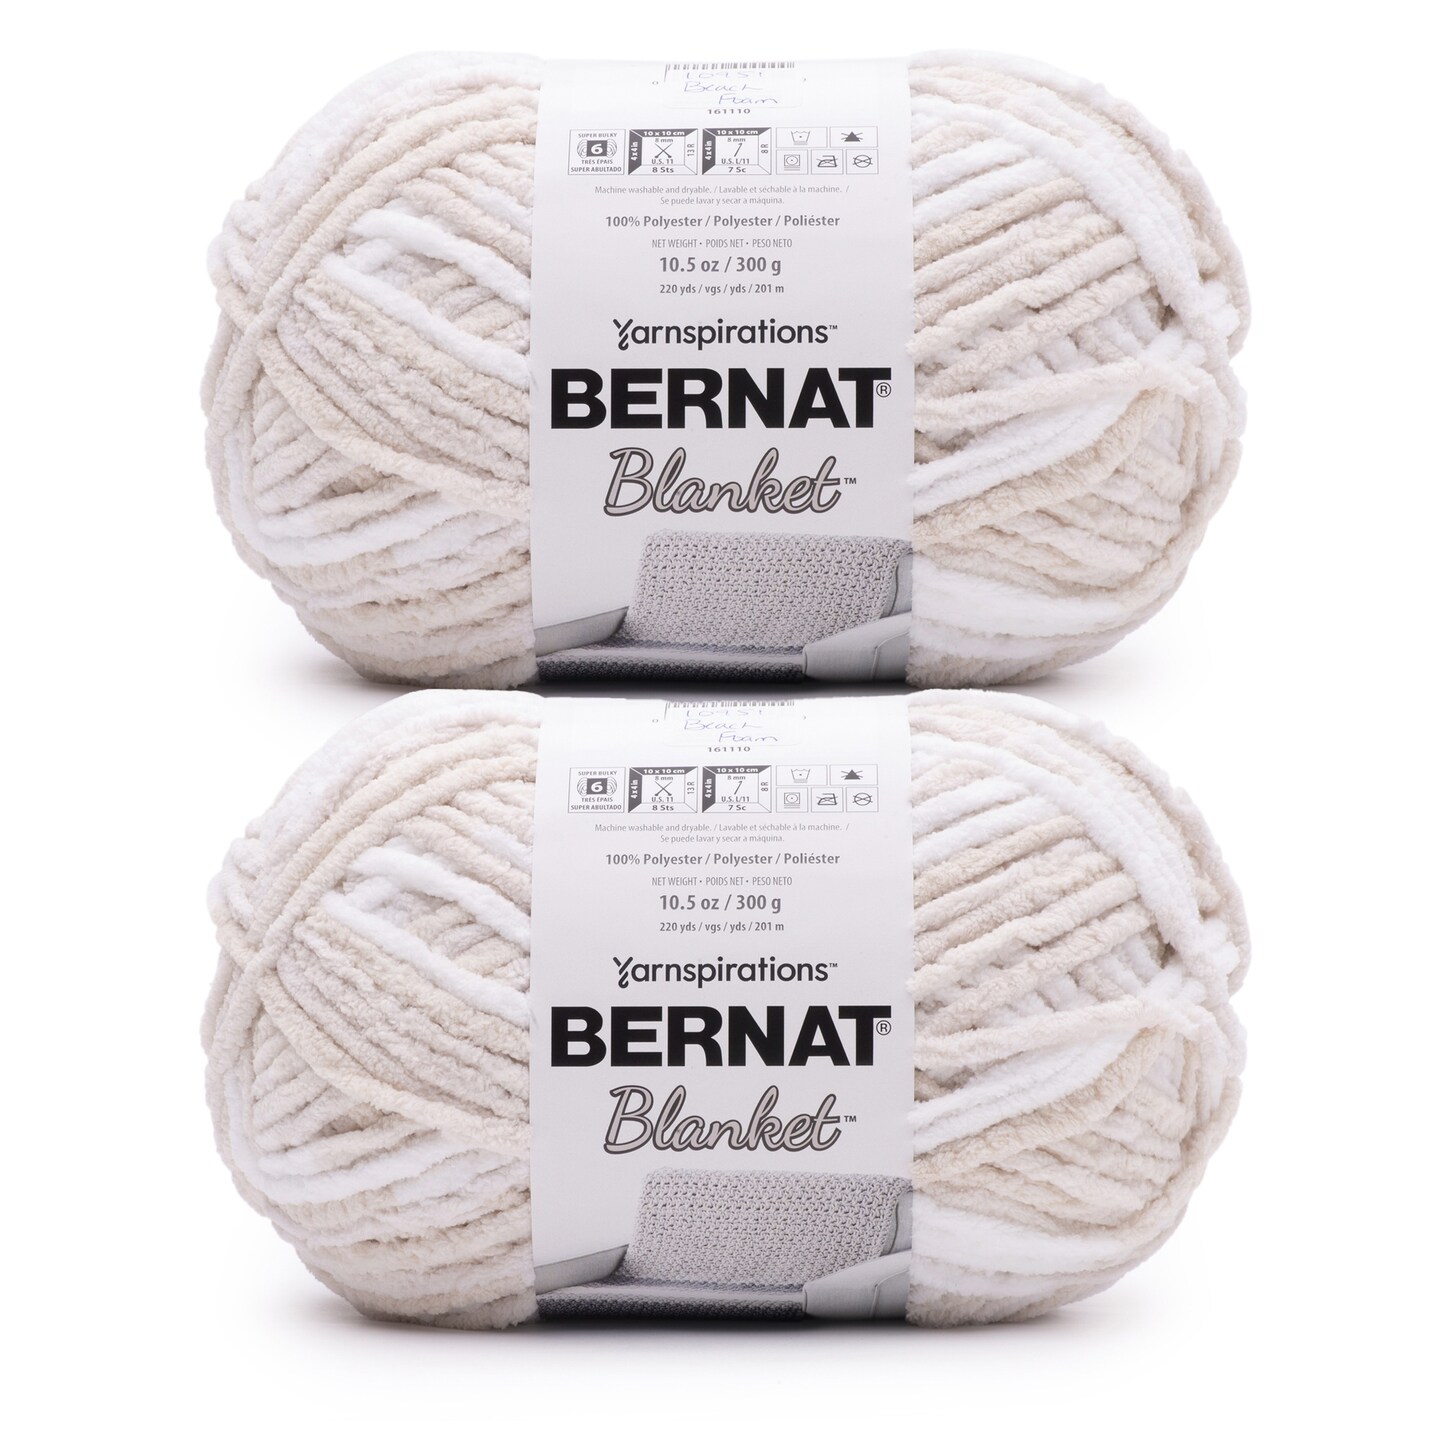 Bernat Blanket Sand Yarn - 2 Pack of 300g/10.5oz - Polyester - 6 Super Bulky - 220 Yards - Knitting/Crochet